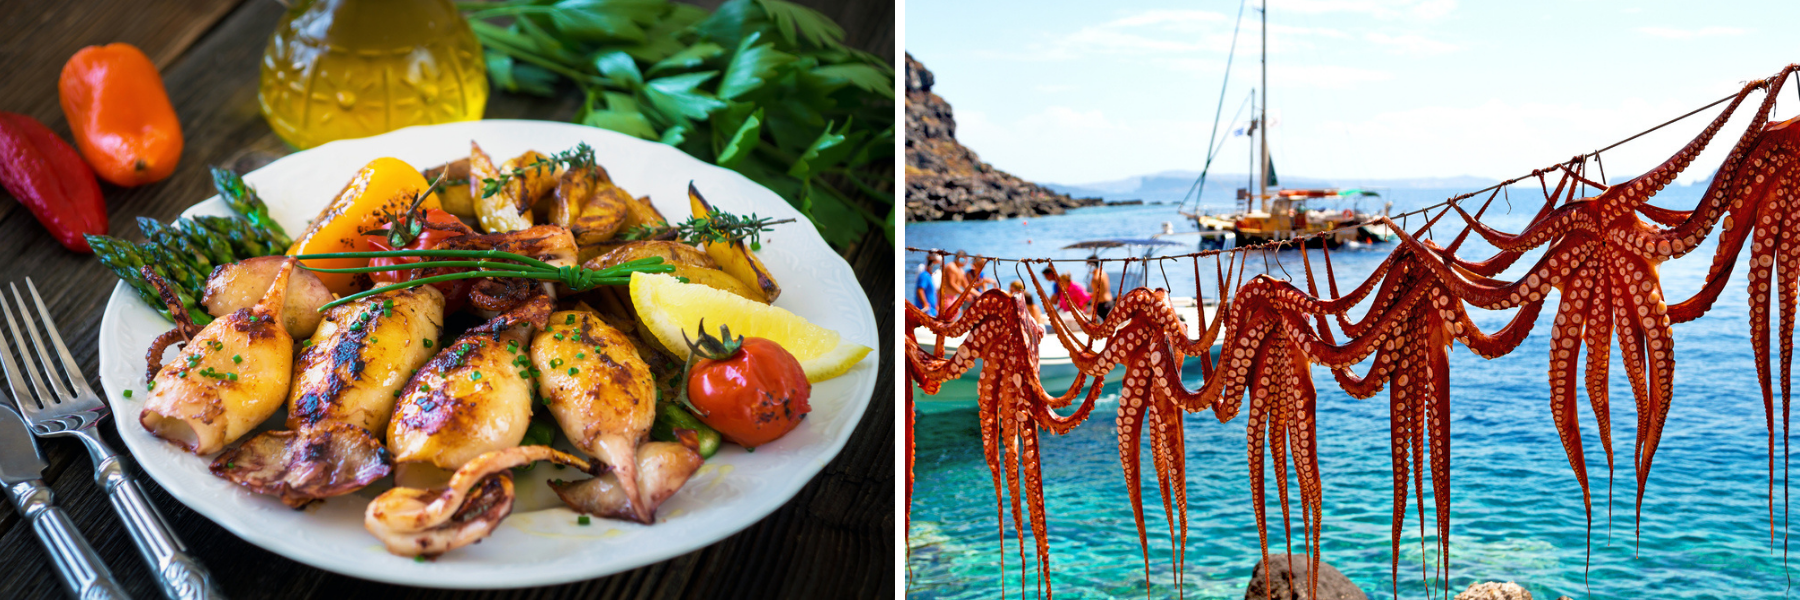 Fisk och skaldjur dominerar både det kroatiska och det grekiska köket.